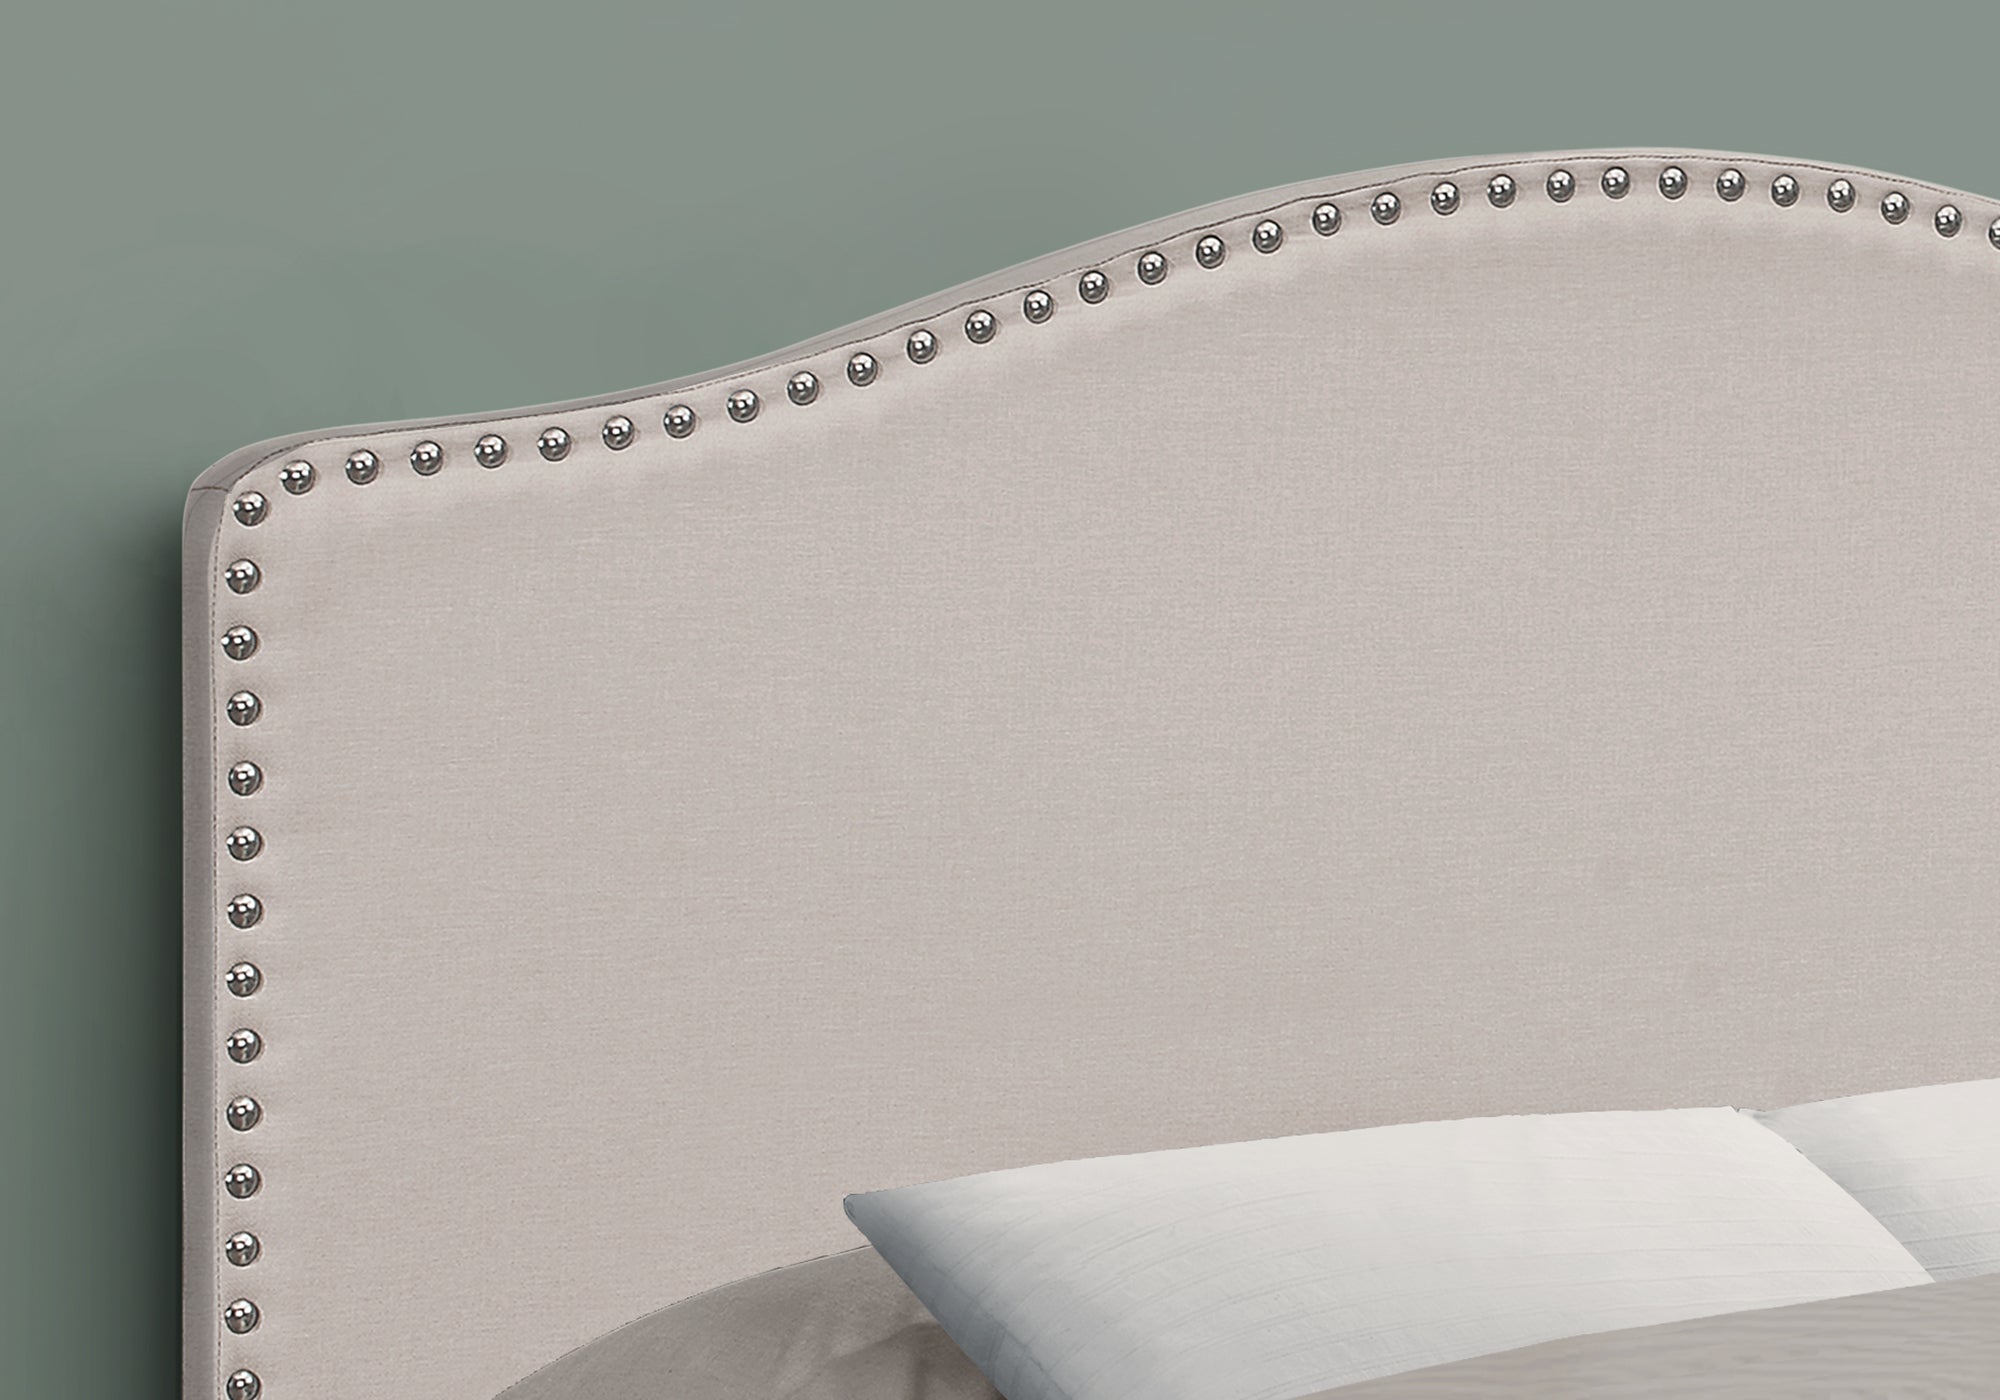 Bed - Full Size / Beige Linen Headboard Only